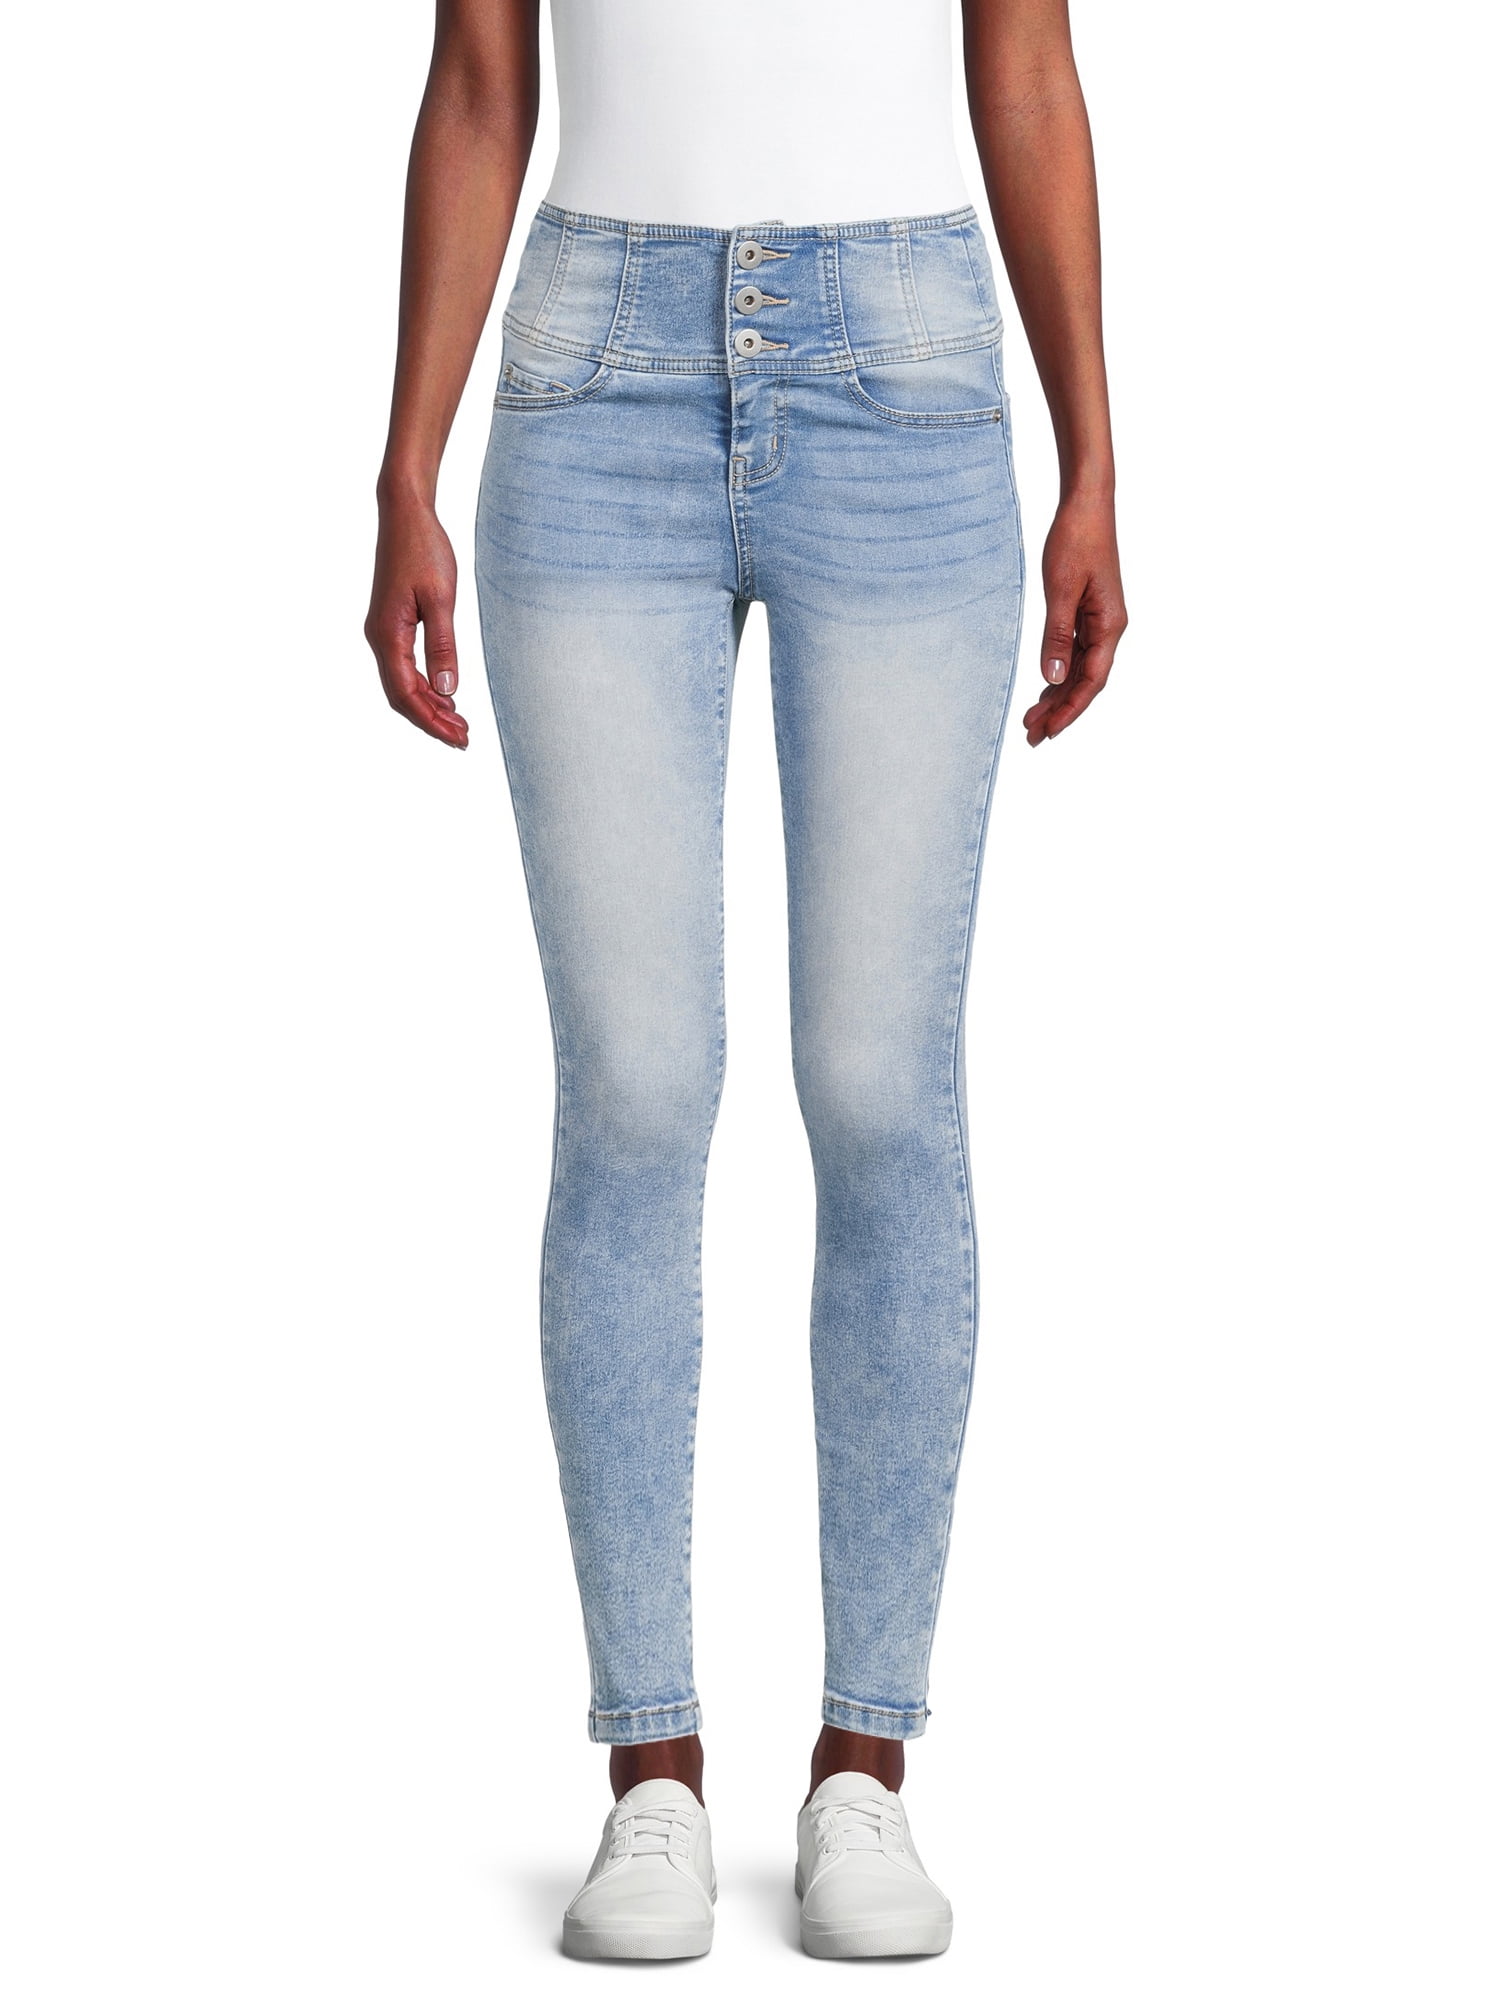 Find Your Perfect No Boundaries Juniors' Corset Jeans - Walmart.com